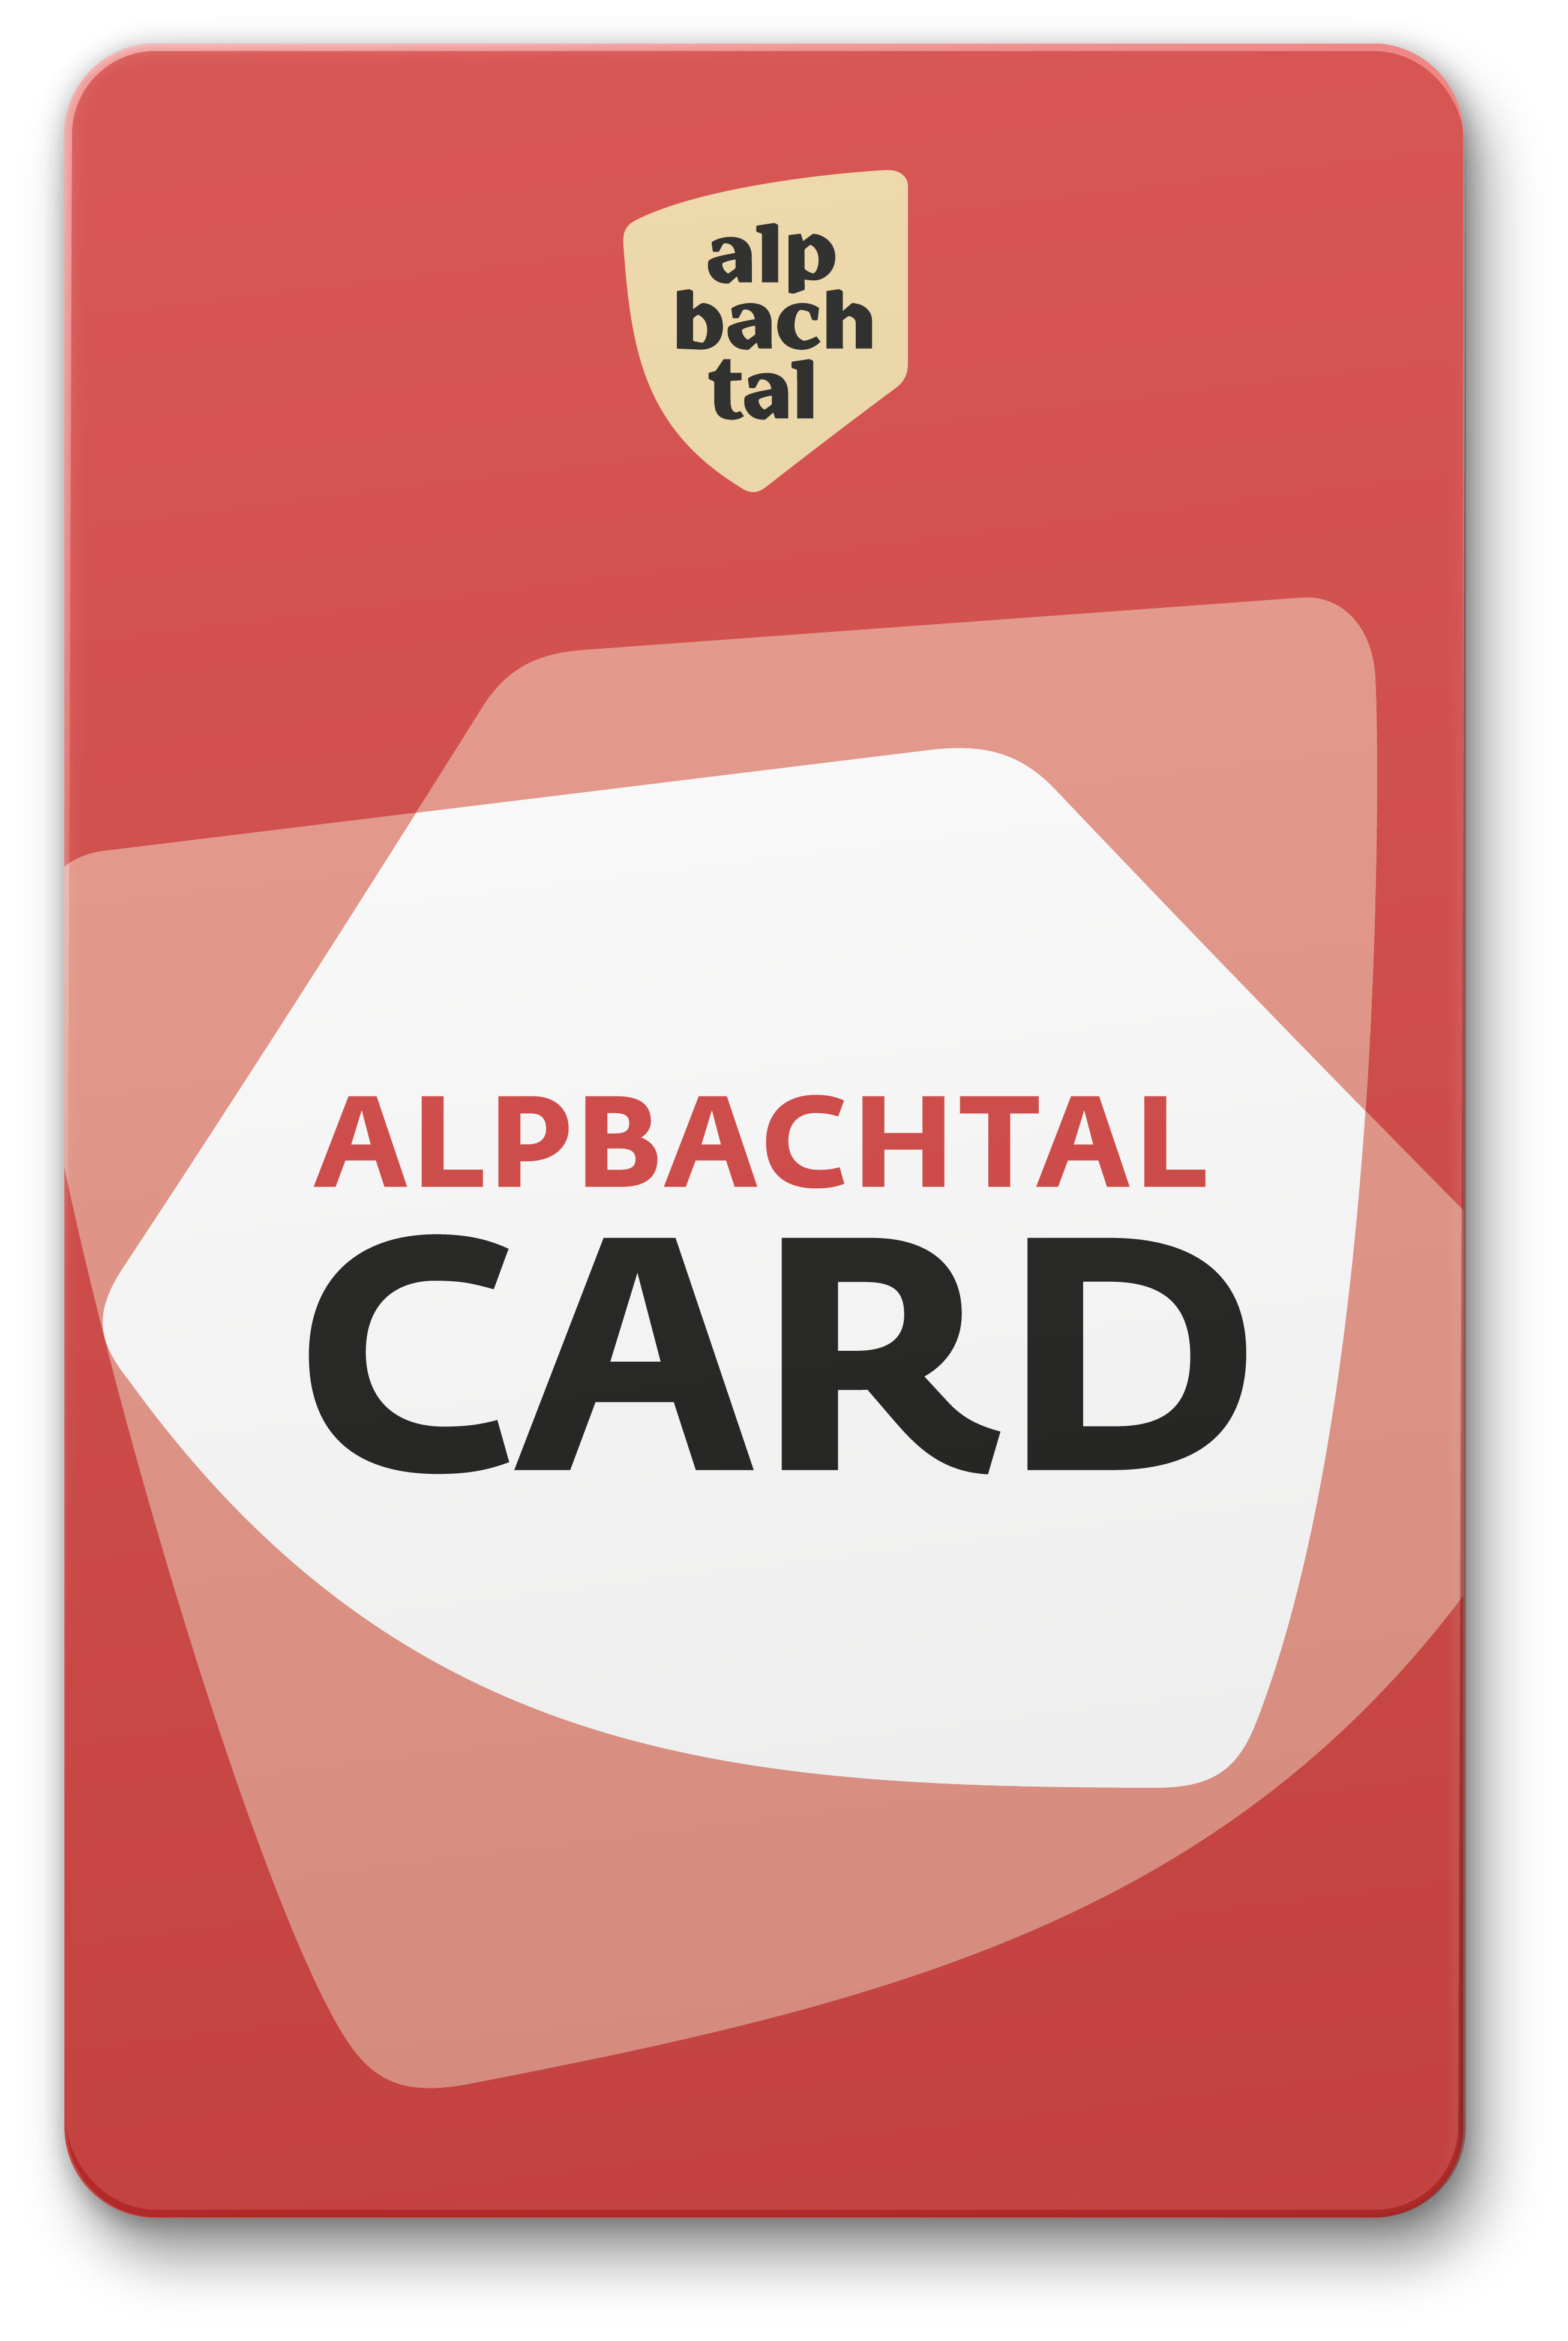 Alpbachtal Card